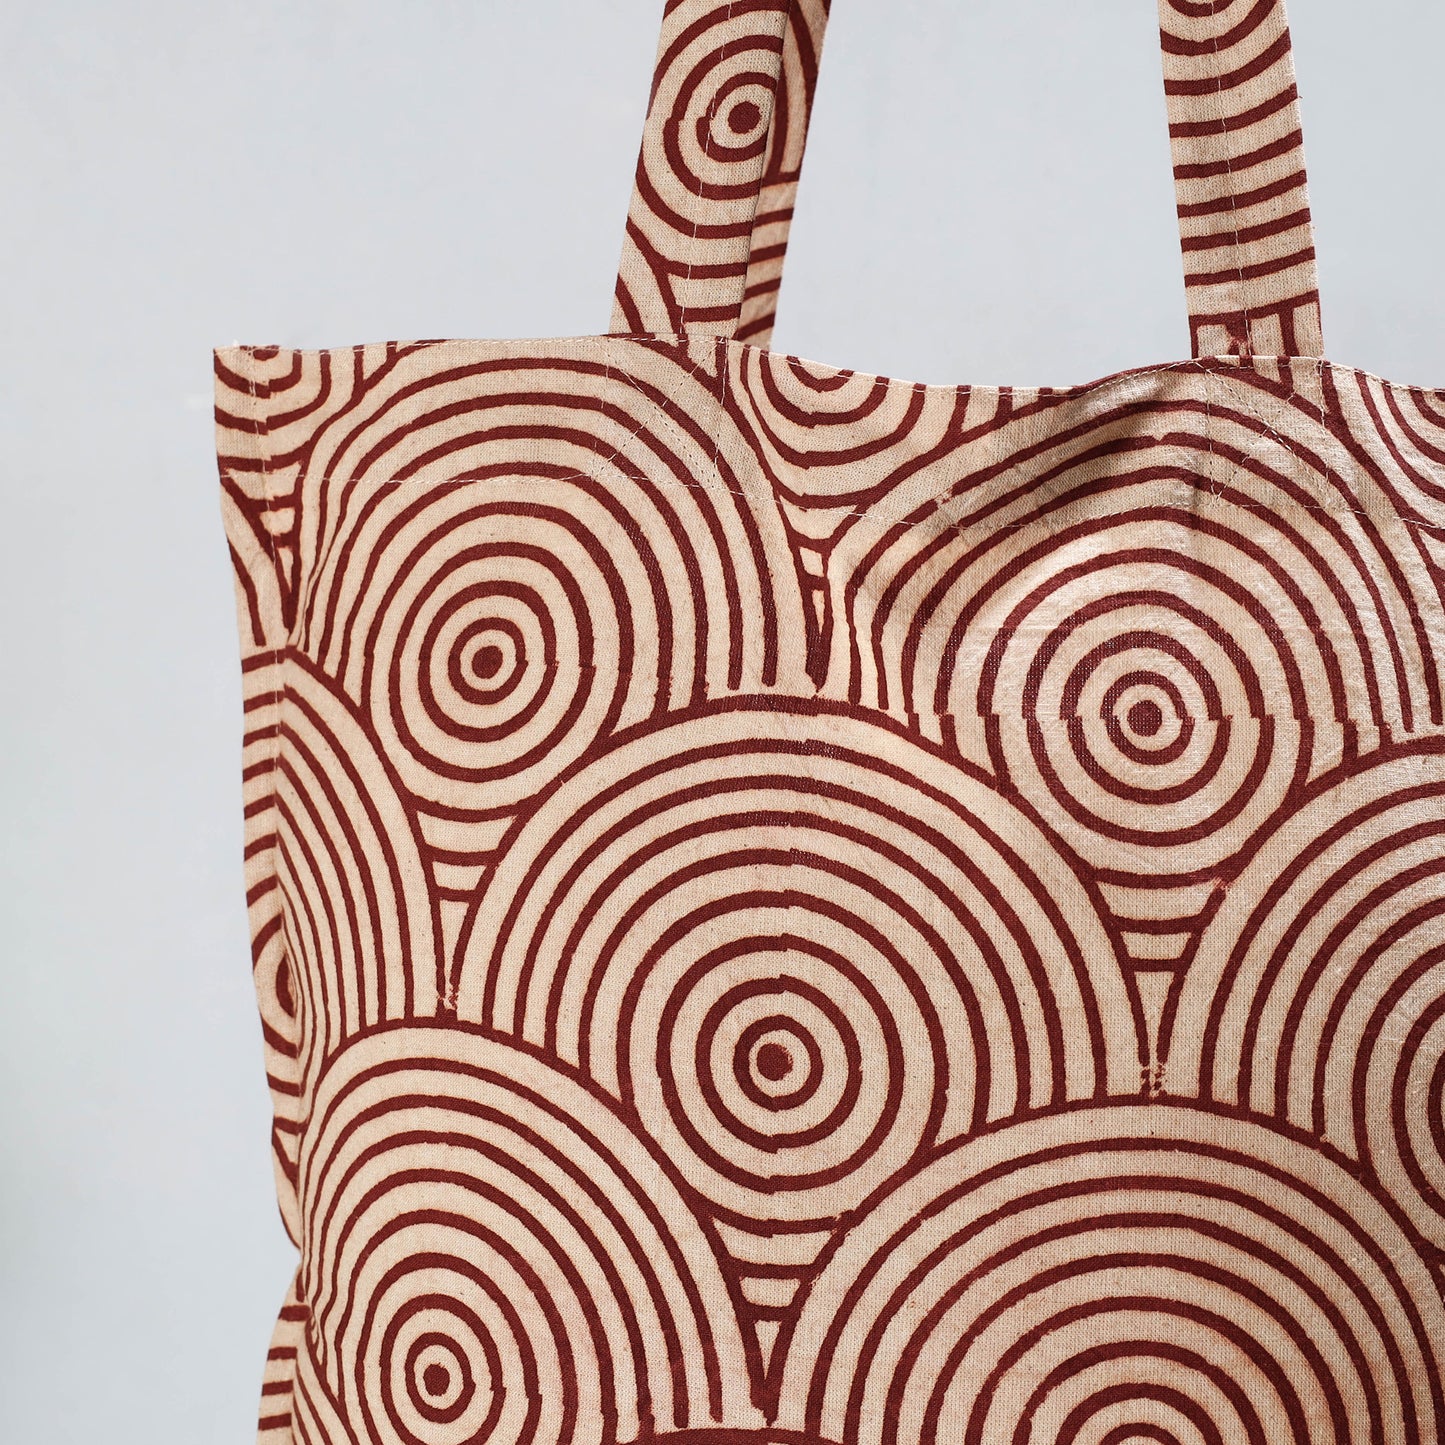 Brown - Pedana Kalamkari Block Printed Cotton Shopping Bag